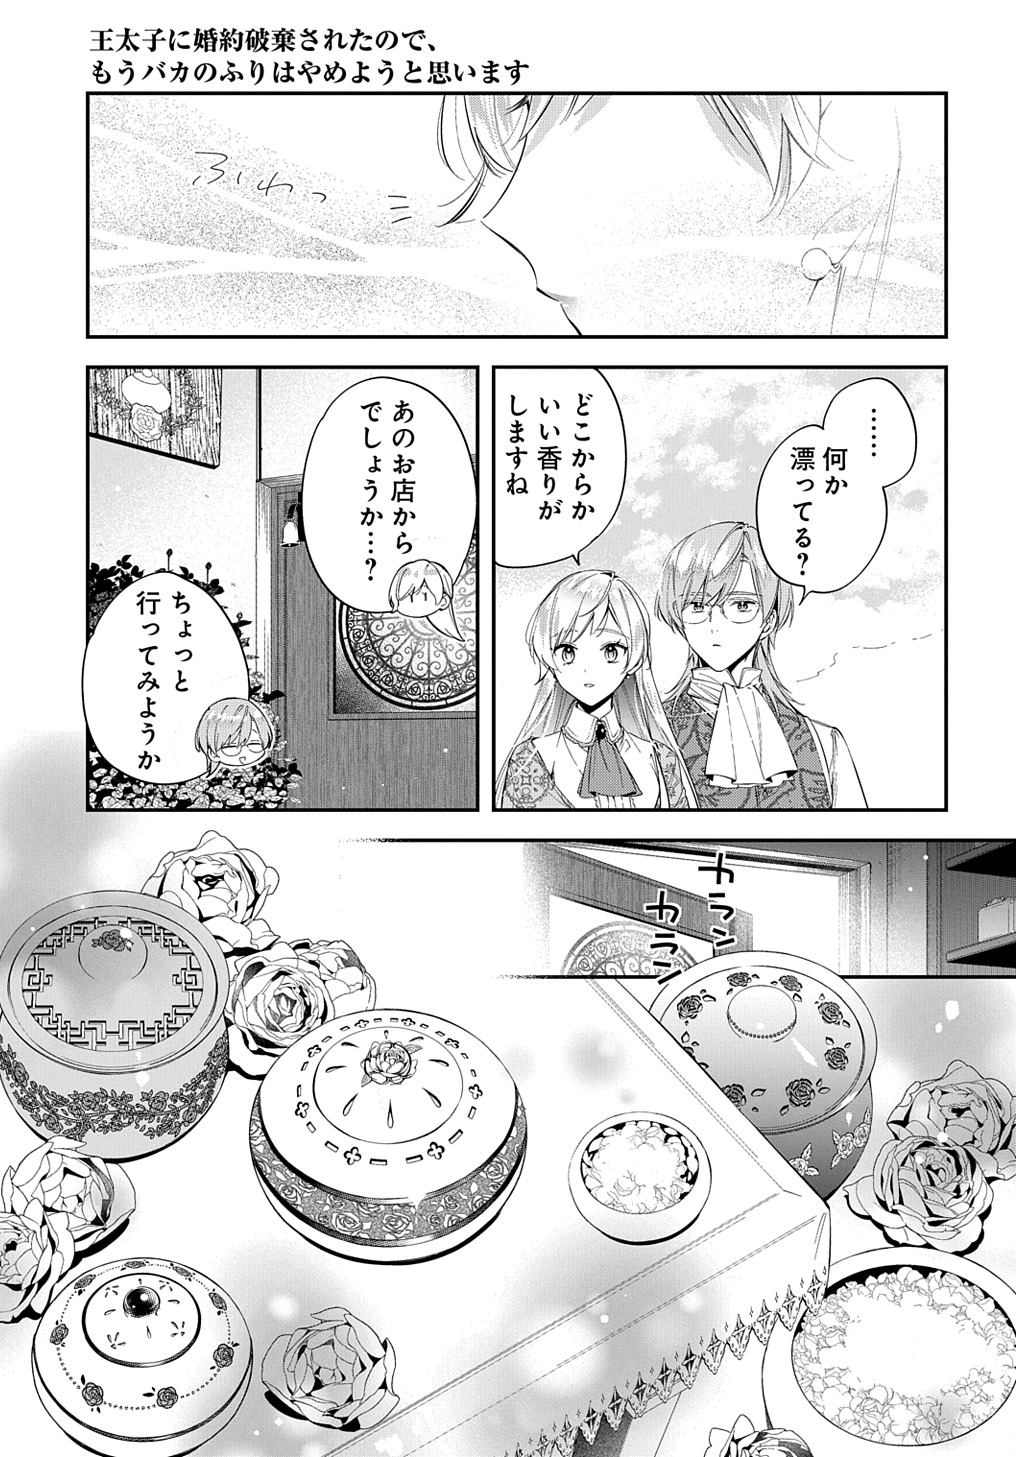 Outaishi ni Konyaku Hakisareta no de, Mou Baka no Furi wa Yameyou to Omoimasu - Chapter 24 - Page 11